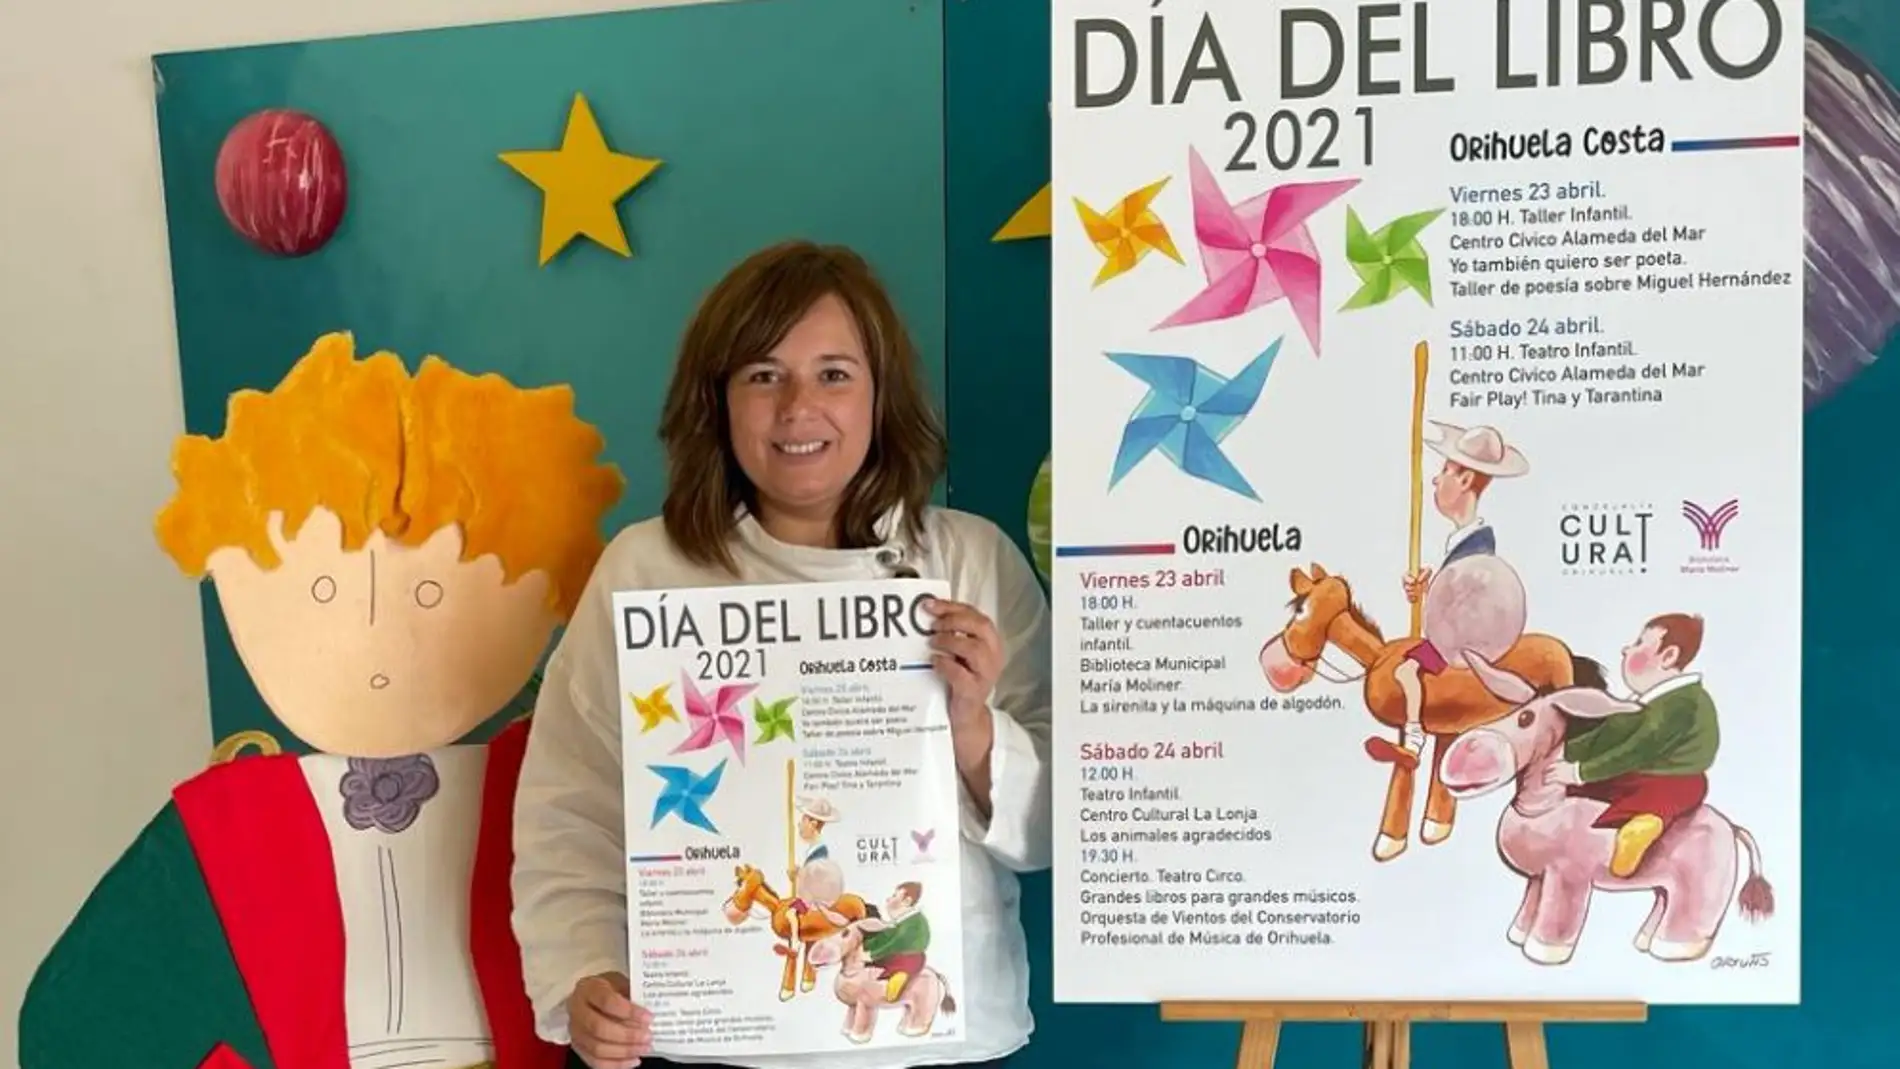 Mar Ezcurra, concejal de Cultura, ha presentado el Día del Libro que se celebrará el viernes 23 y sábado 24 de abril en Orihuela y Orihuela Costa con diversas actividades enfocadas al fomento de la lectura 